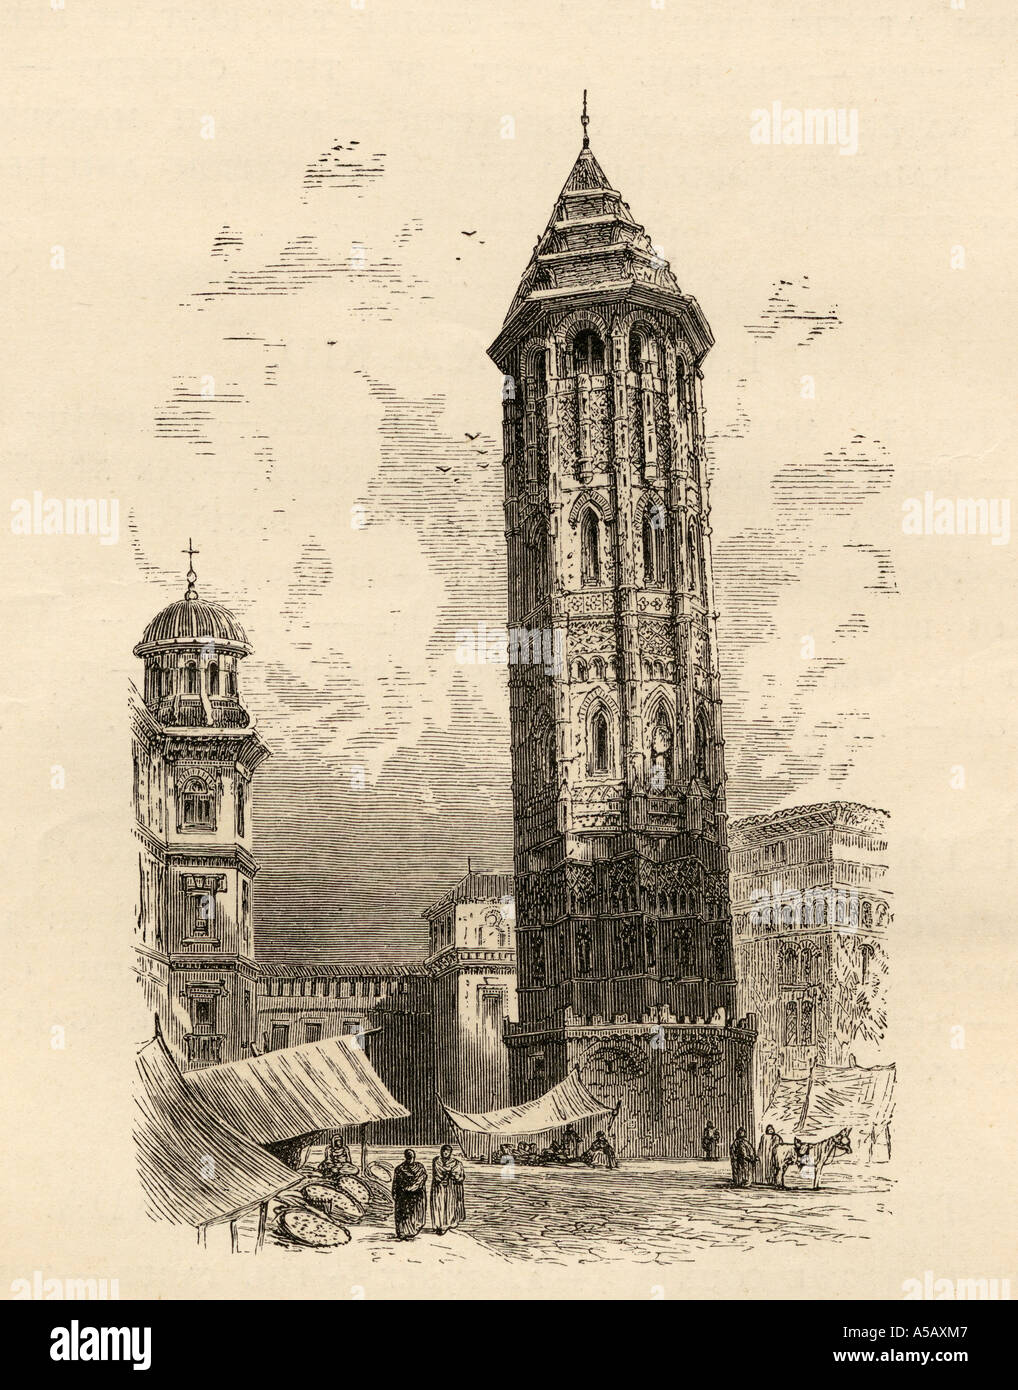 La tour penchée de Saragosse, aka Zaragoza, Espagne, avant d'être démolis. Le livre de photos de l'espagnol Rev Samuel Manning, publié en 1870. Banque D'Images